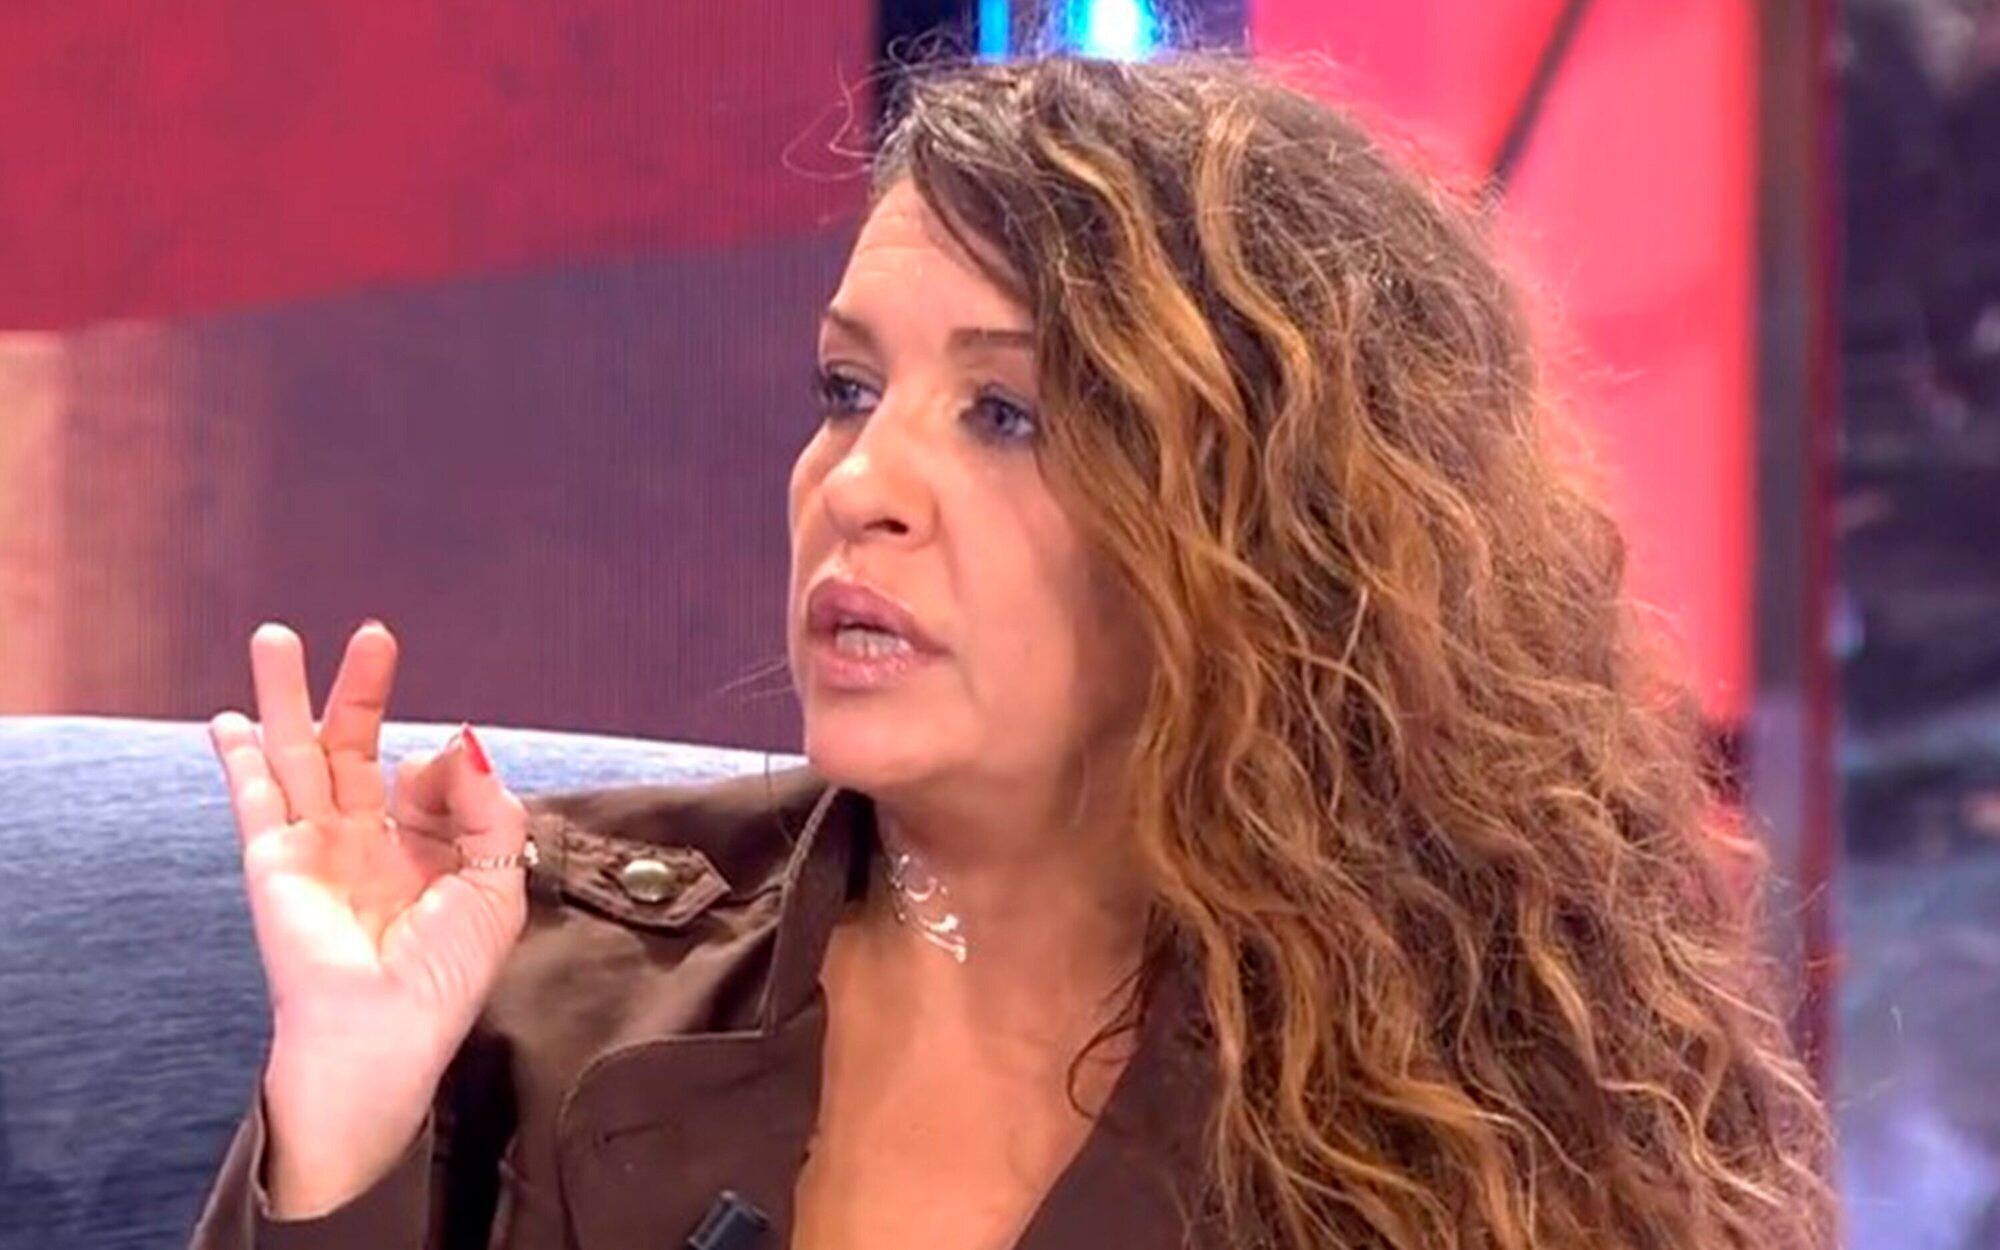 Laura Manzanedo carga contra Mar Montoro 6 años después de su despido en Europa FM: "Se sintió inferior"